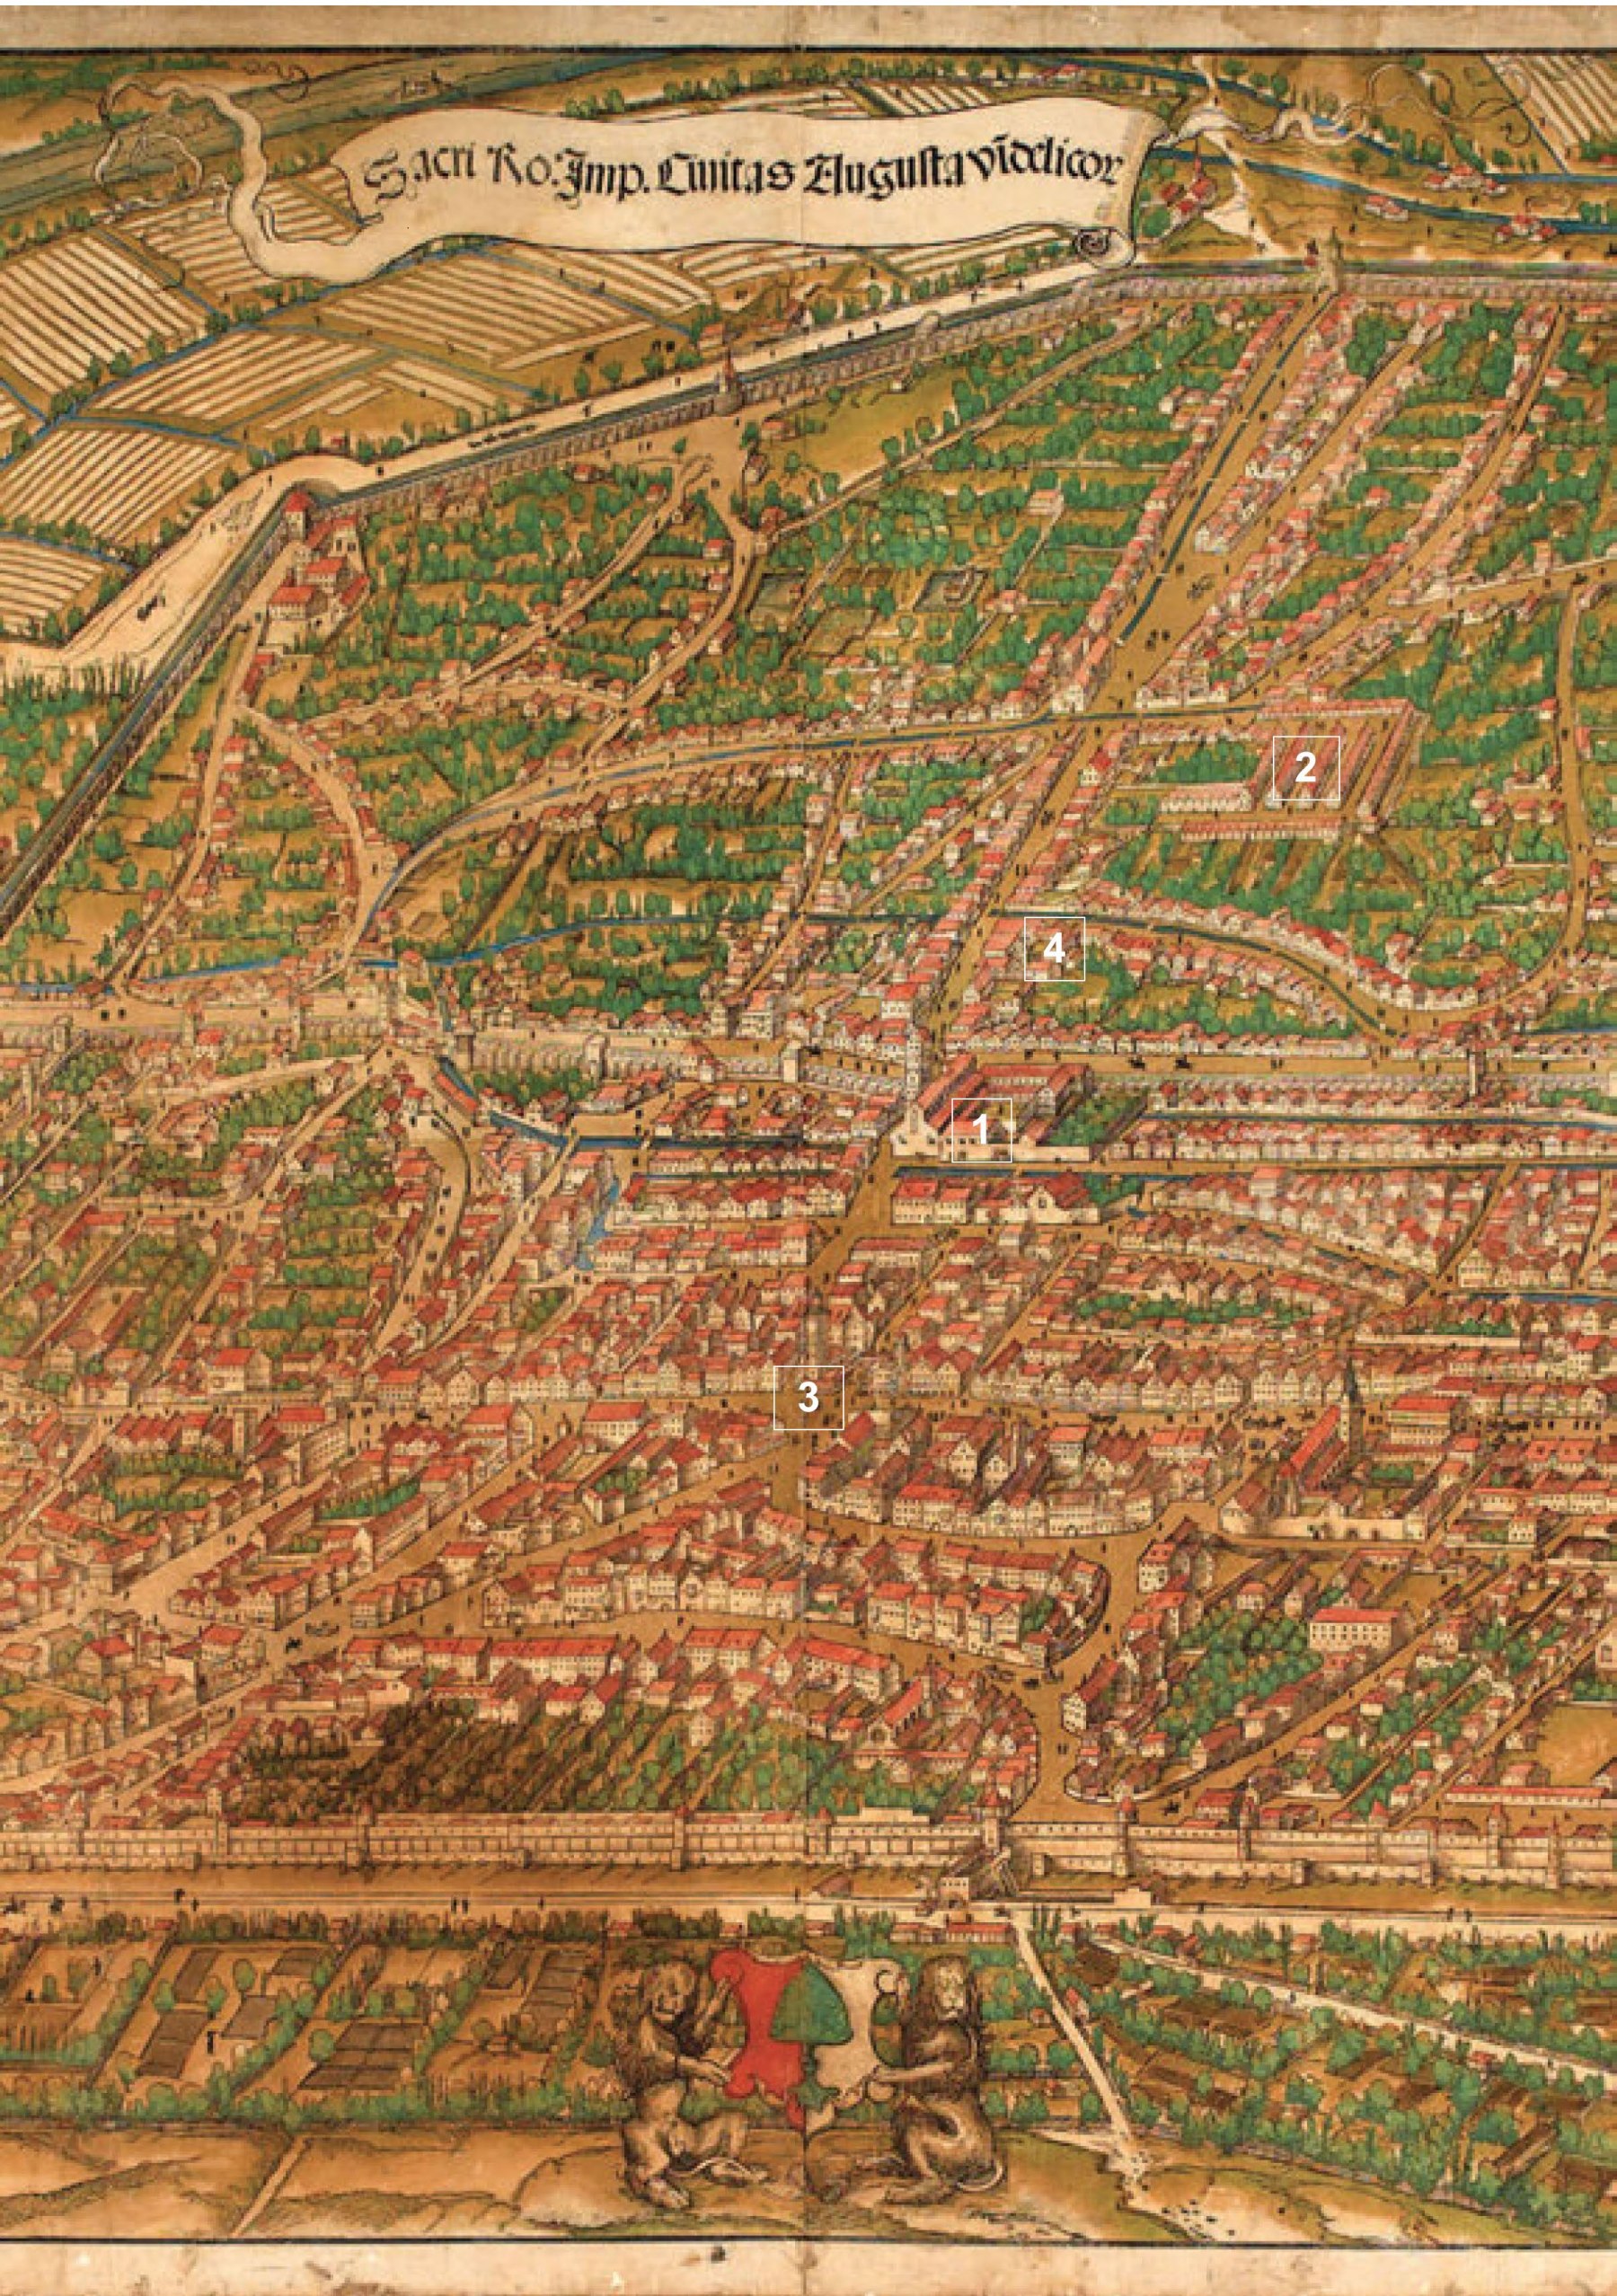 Abb. Jörg Selds Stadtplan von Augsburg 1521 